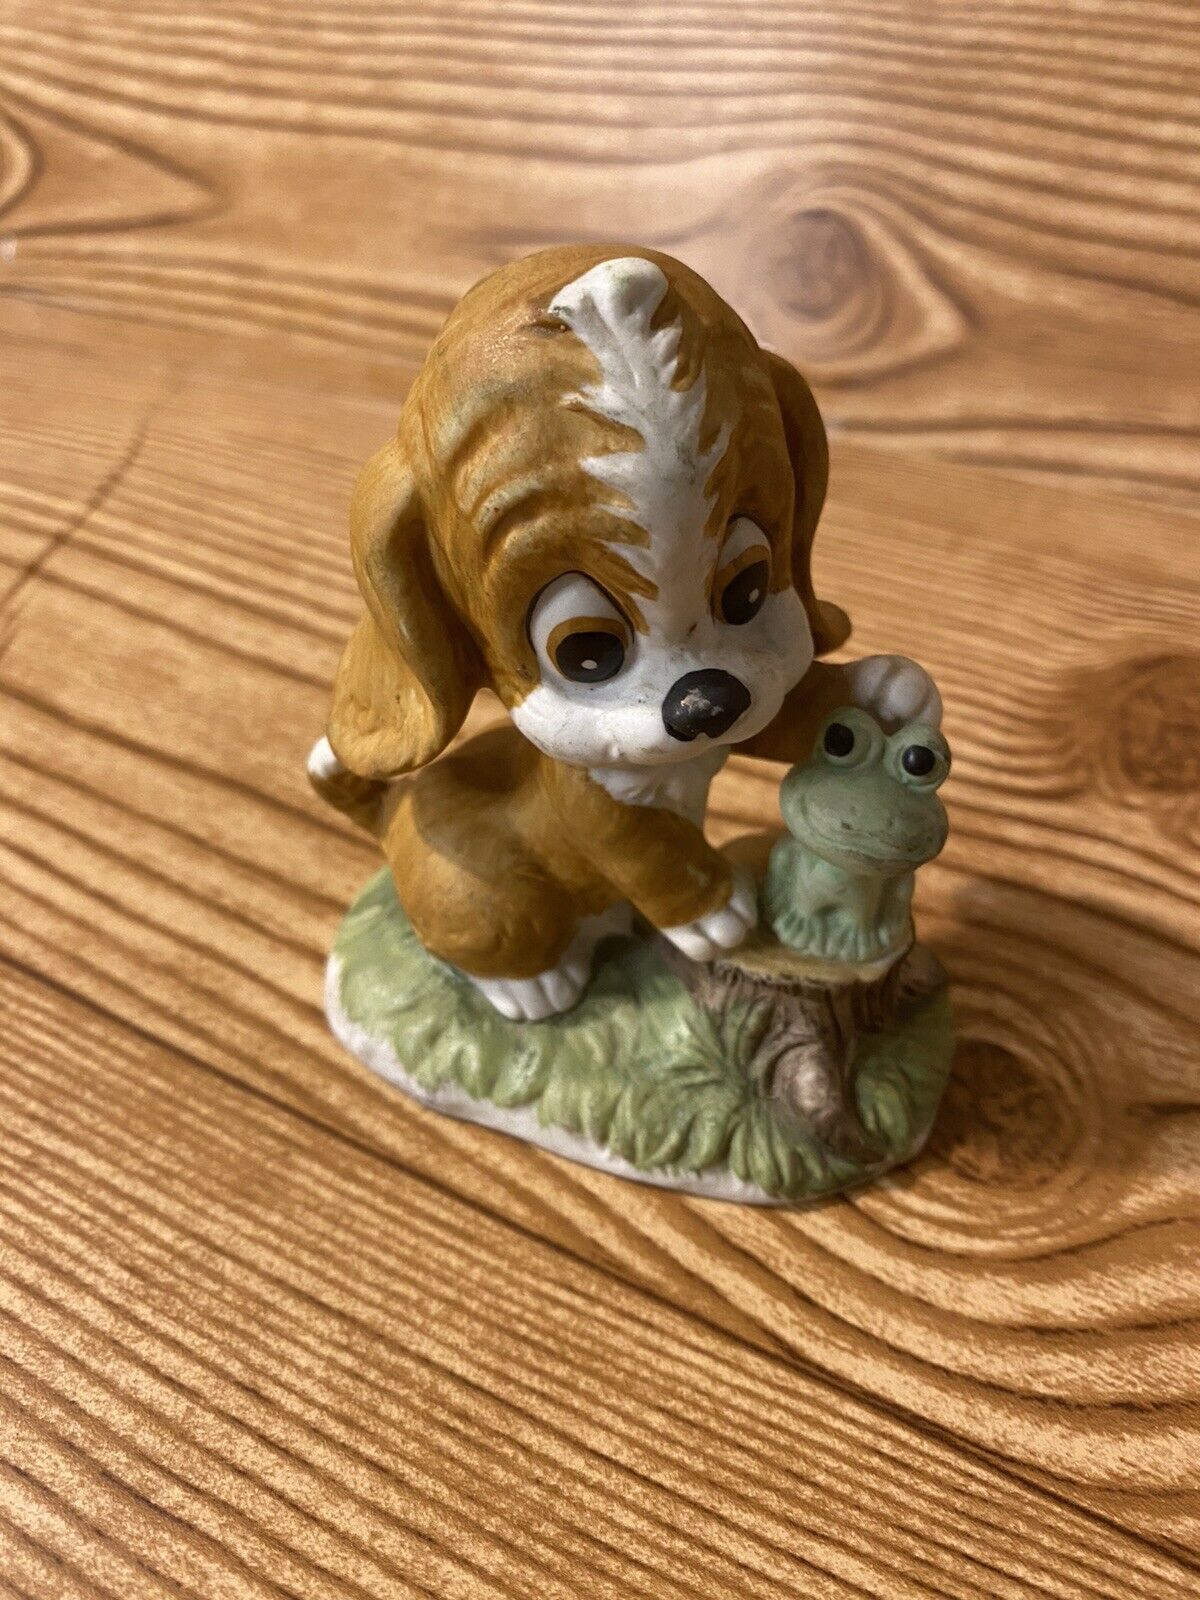 Vintage Napco Ware Porcelain Figurine Puppy Dog & Frog Friend 3.5"x 3.5" ~ Japan